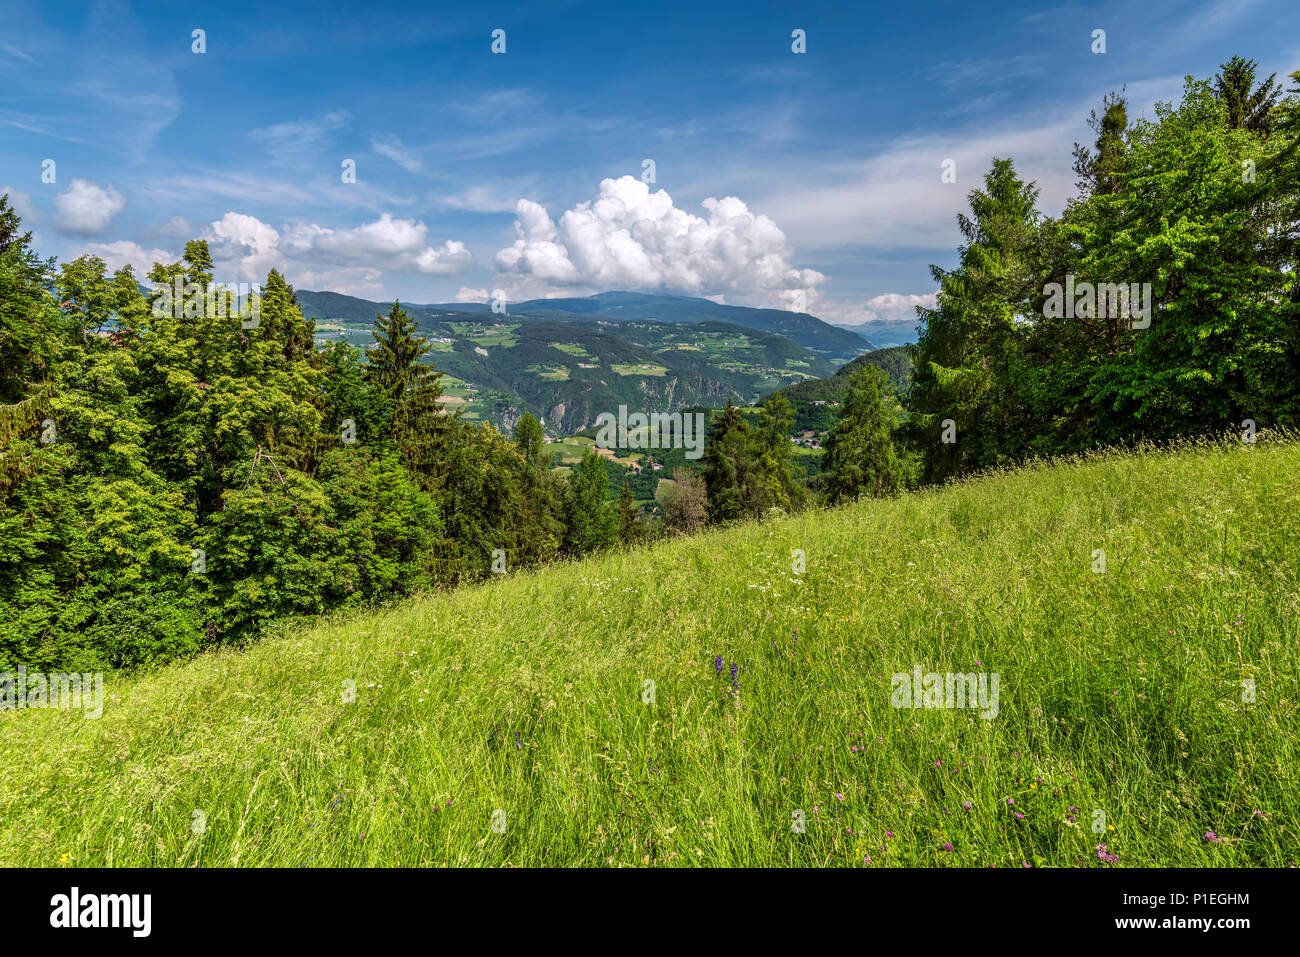 Scenic estate paesaggio di montagna, Collepietra - Steinegg, Trentino Alto Adige - Alto Adige, Italia Foto Stock